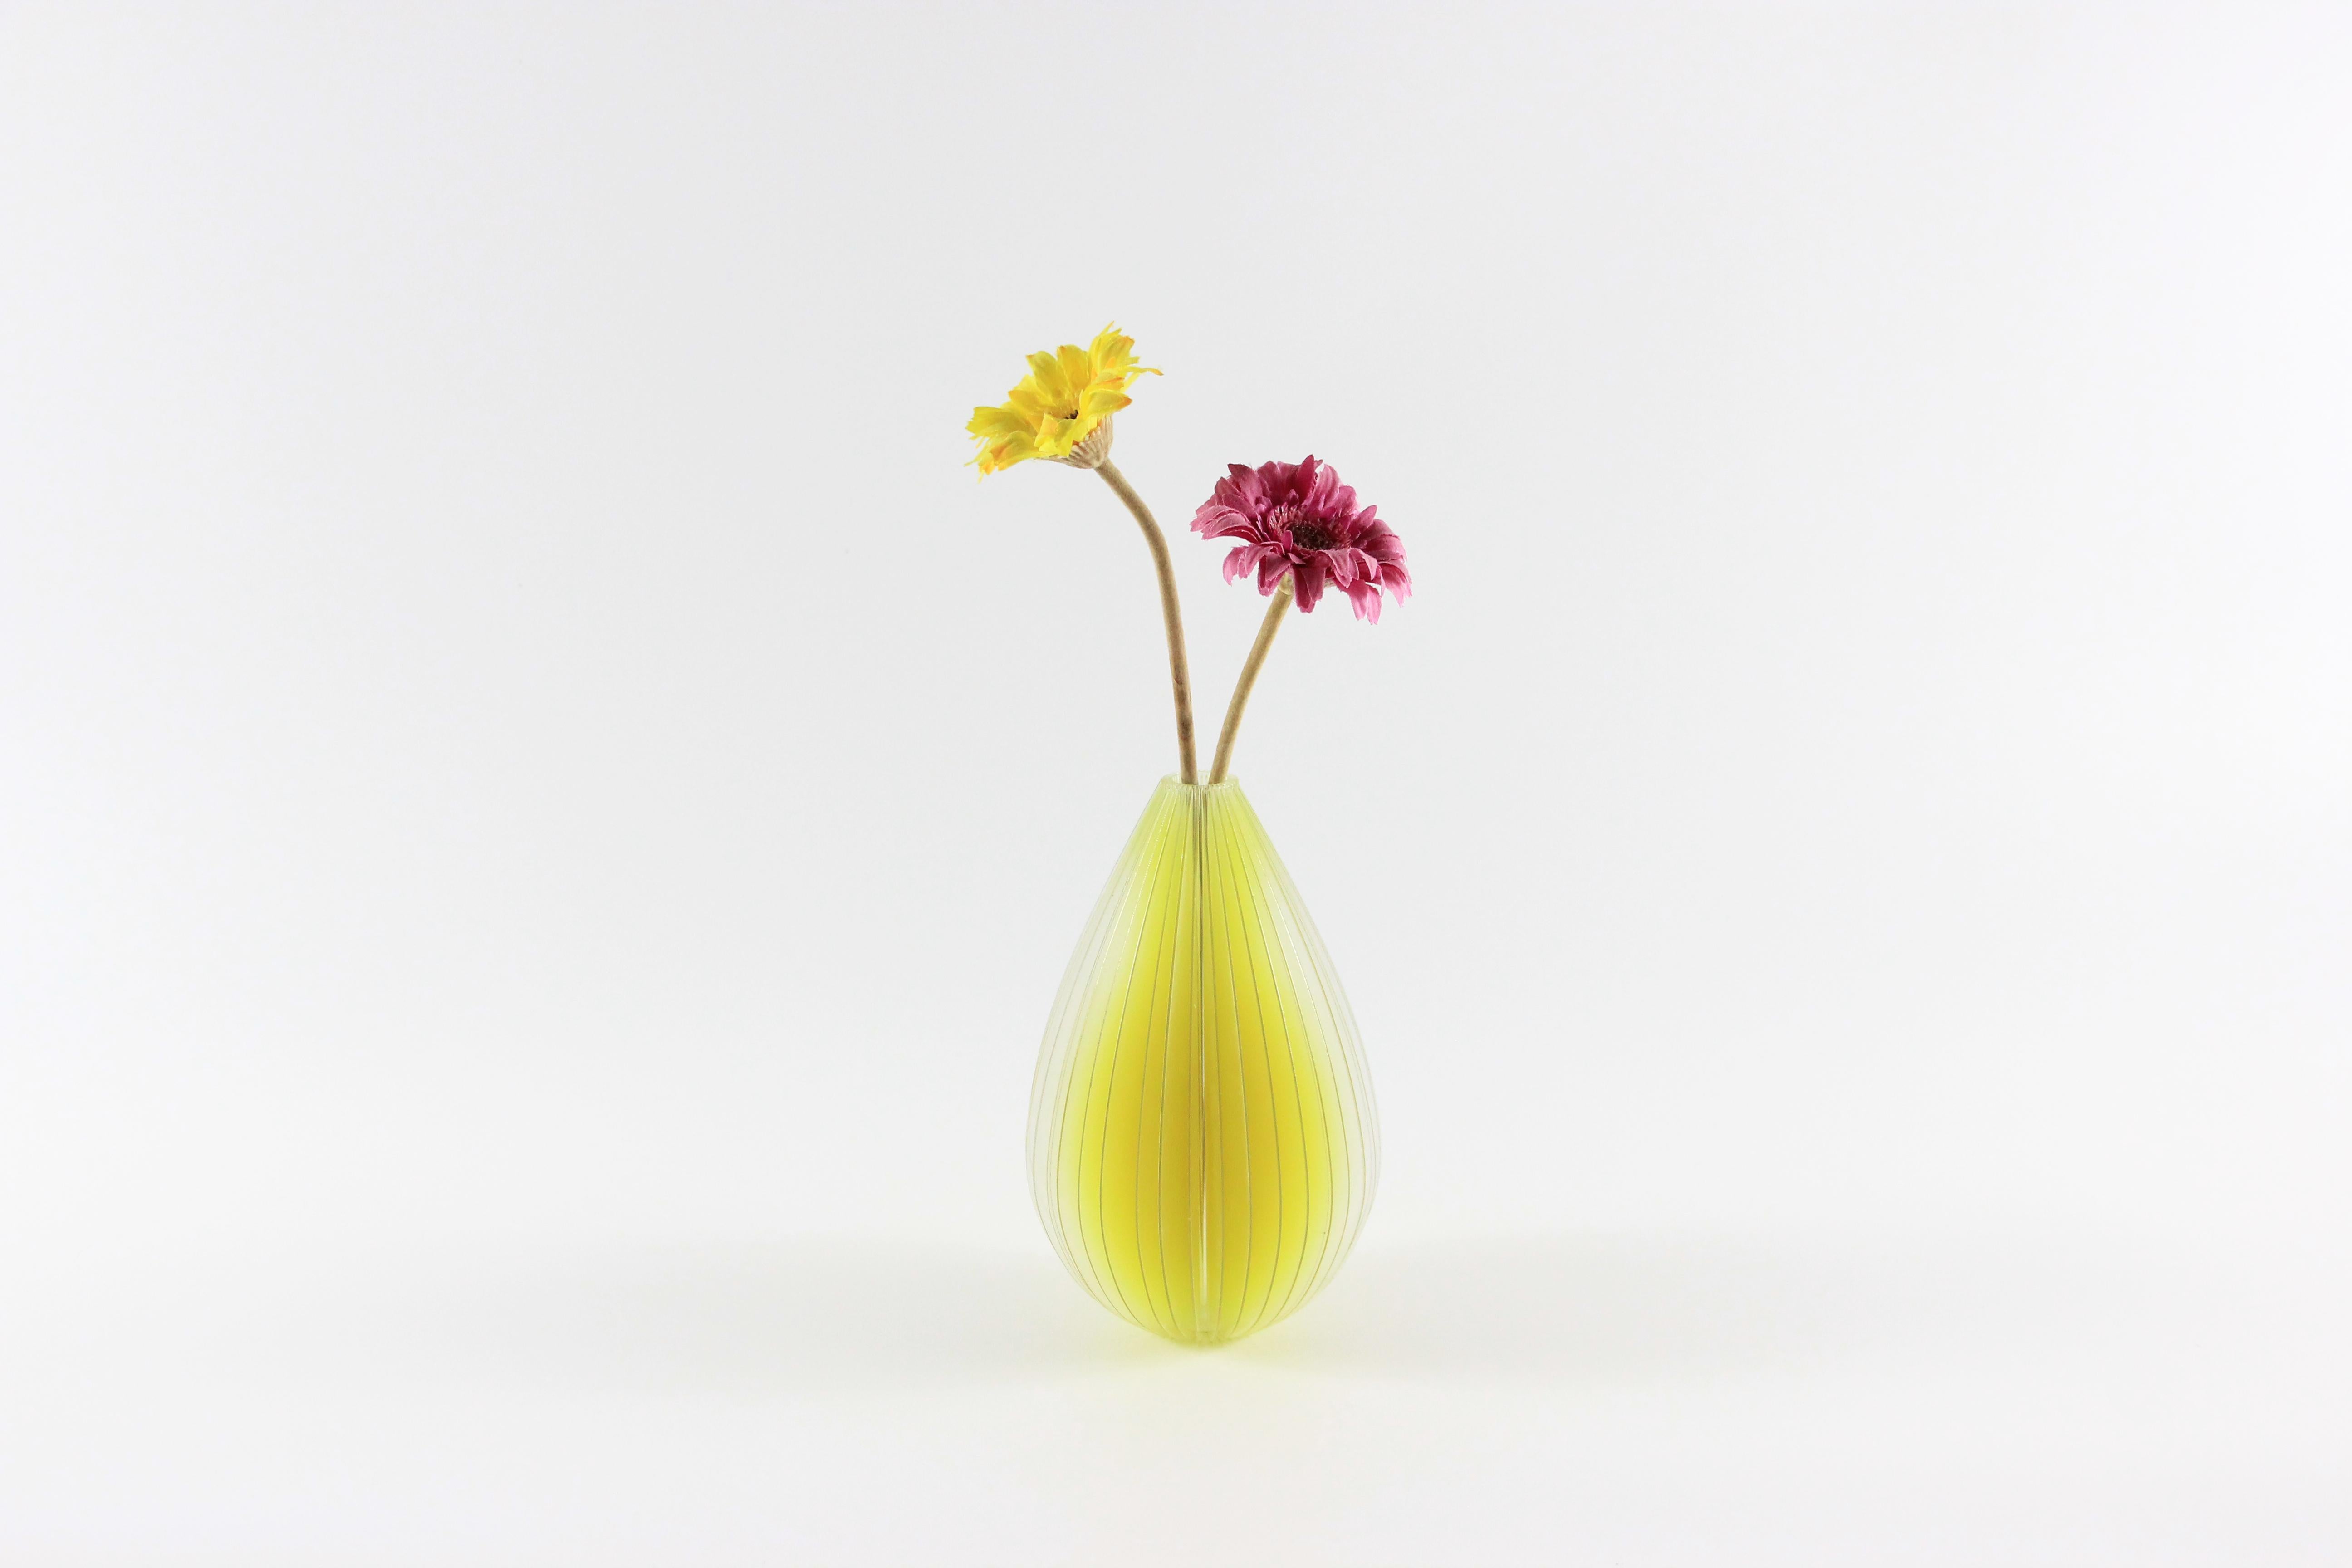 Die Vase Lightness ist von einer zufälligen Szene inspiriert. Wenn Licht in den geschichteten Raum projiziert wird, beginnt die wunderbare Phantasie. Die Vasen weisen Farbabstufungen auf, die sich je nach Lichteinfall optisch verändern, als ob die